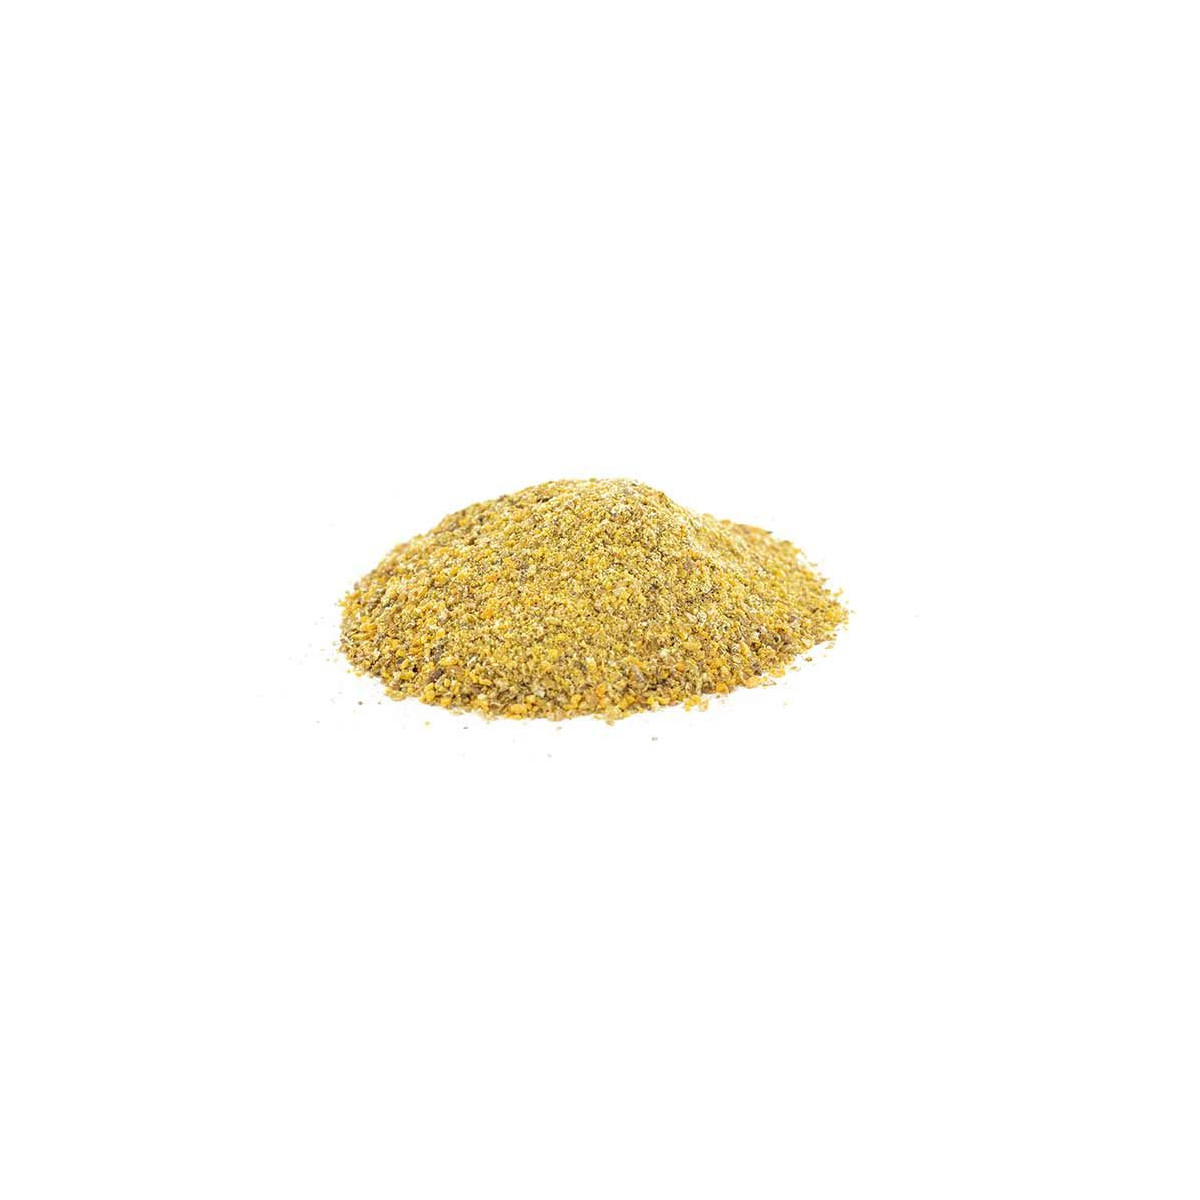 Fenugrec moulu (500g), fenugrec en poudre 100% naturel, graines de fenugrec  en poudre, sans additifs, végétaliennes, graines de fenugrec moulues :  : Épicerie